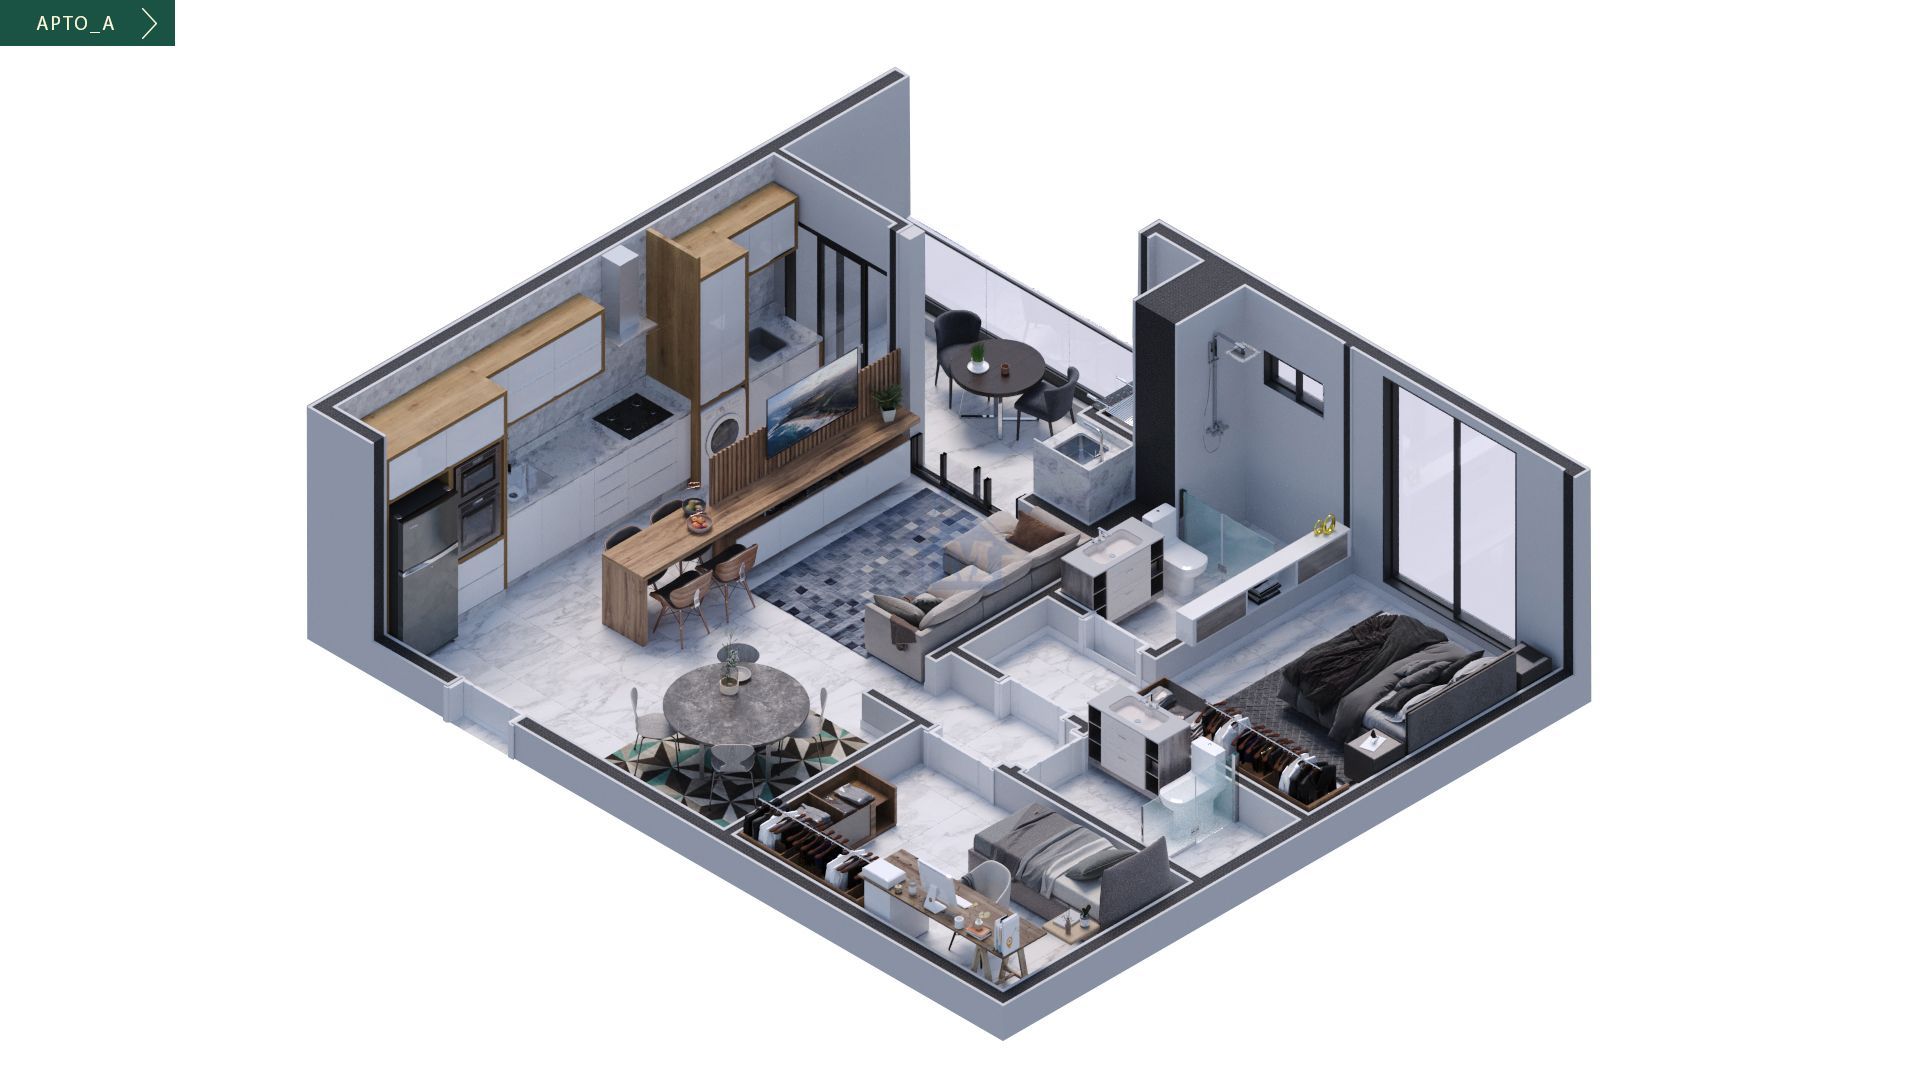 Apartamento, 2 quartos, 77 m² - Foto 2